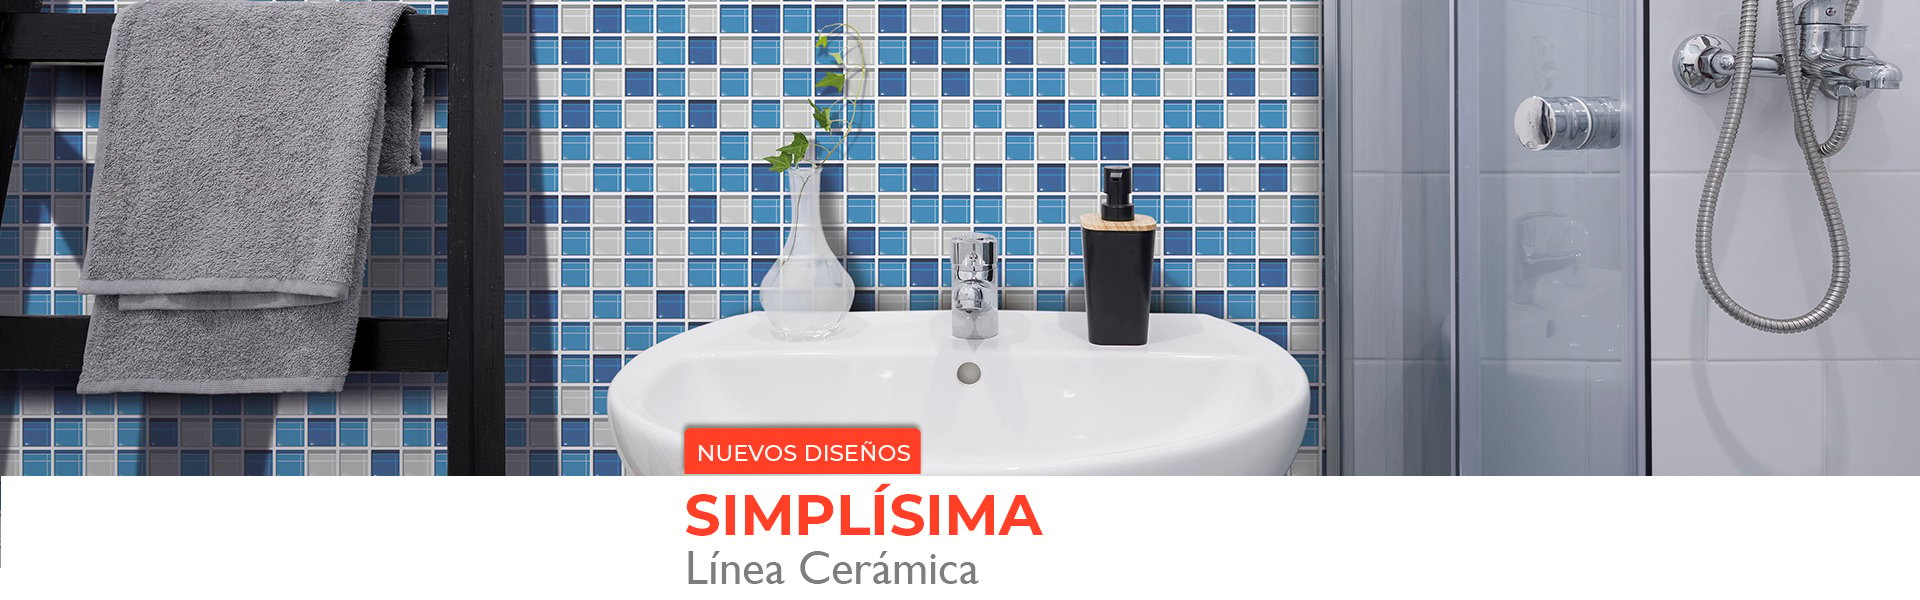 Linea-Ceramica-Mosaico-Aqua.jpg